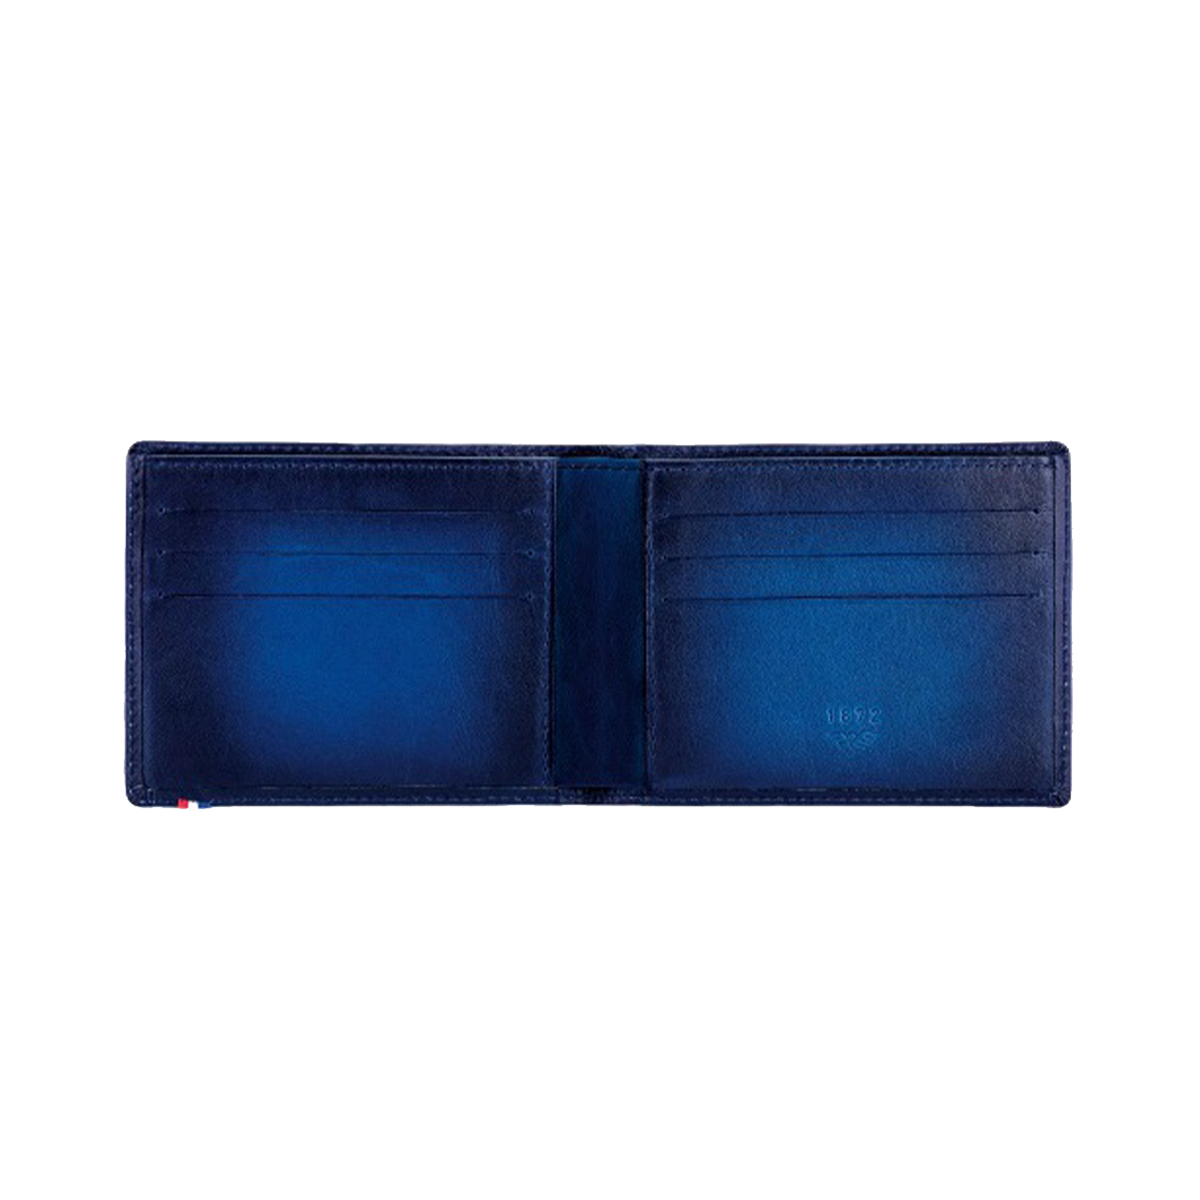 Портмоне Atelier 190410 Цвет Синий Патинированная кожа Atelie, шесть отделений для кредитных карт | S.T. Dupont